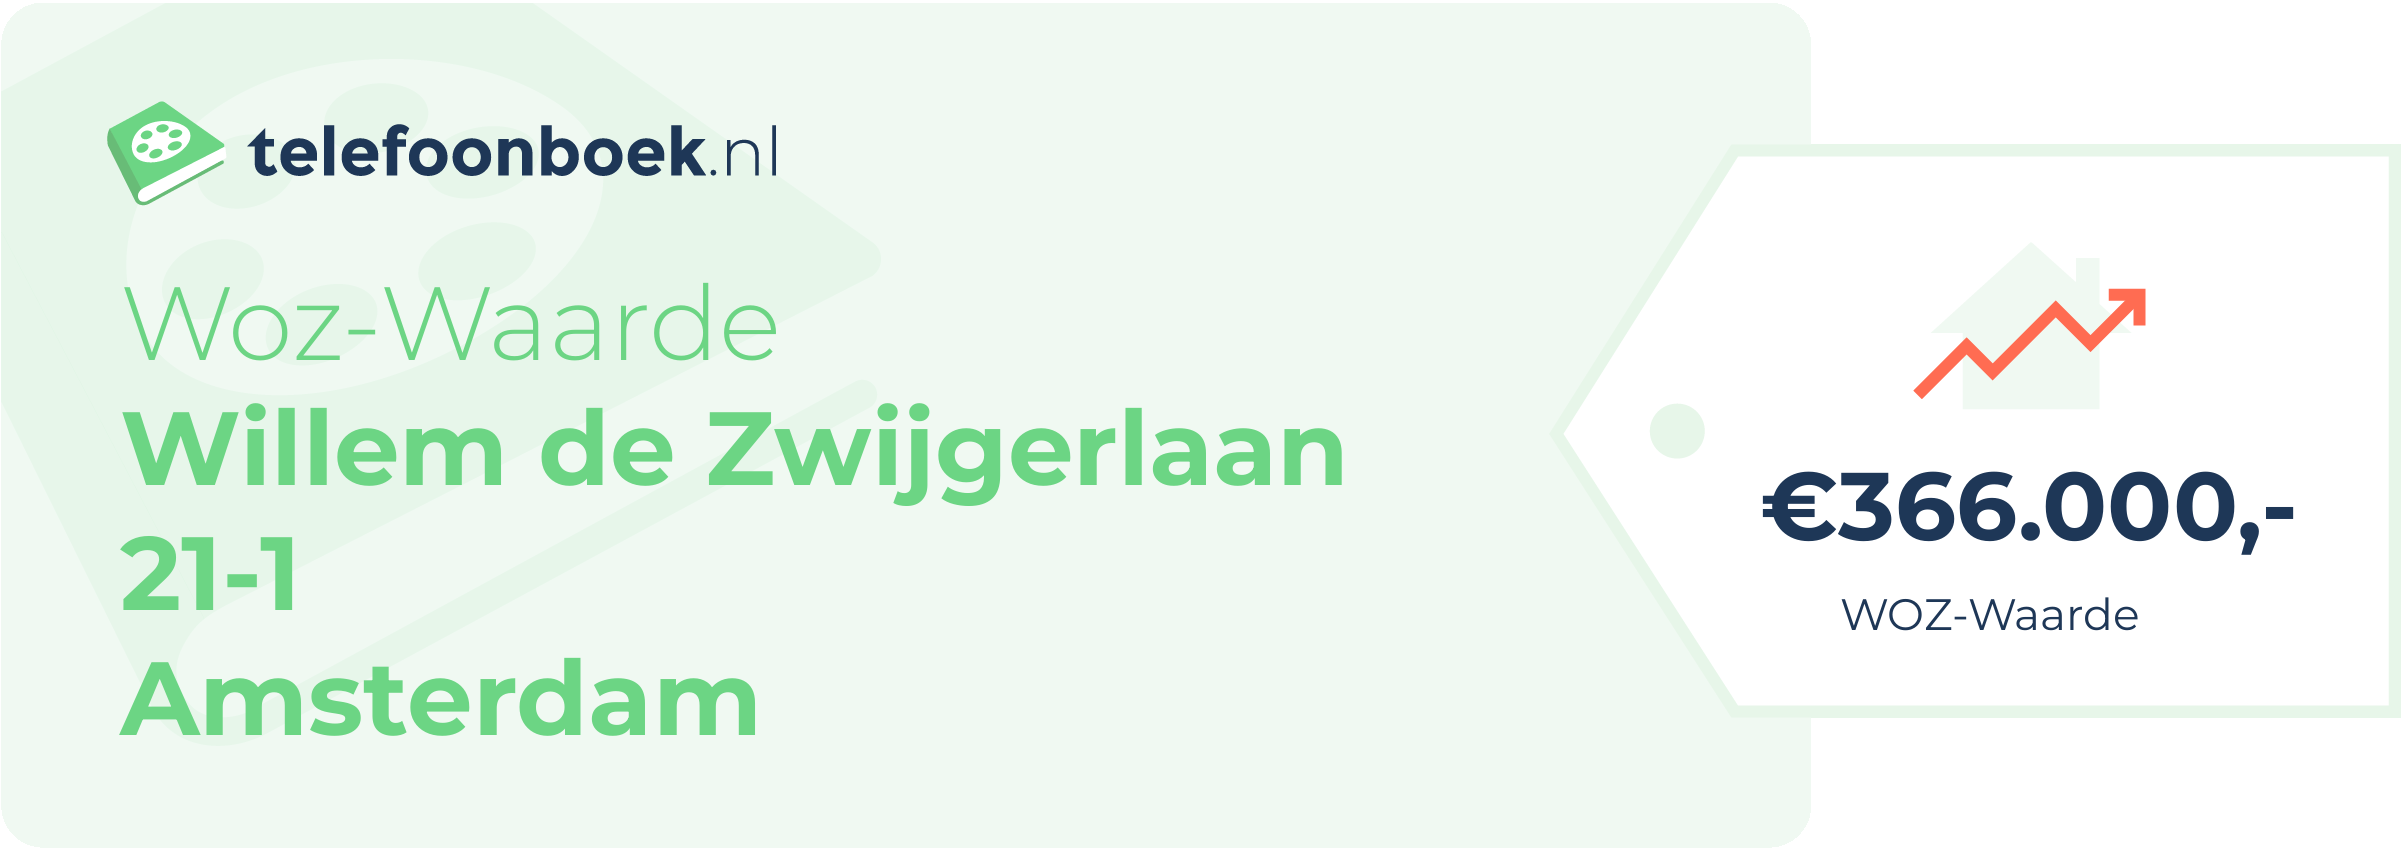 WOZ-waarde Willem De Zwijgerlaan 21-1 Amsterdam